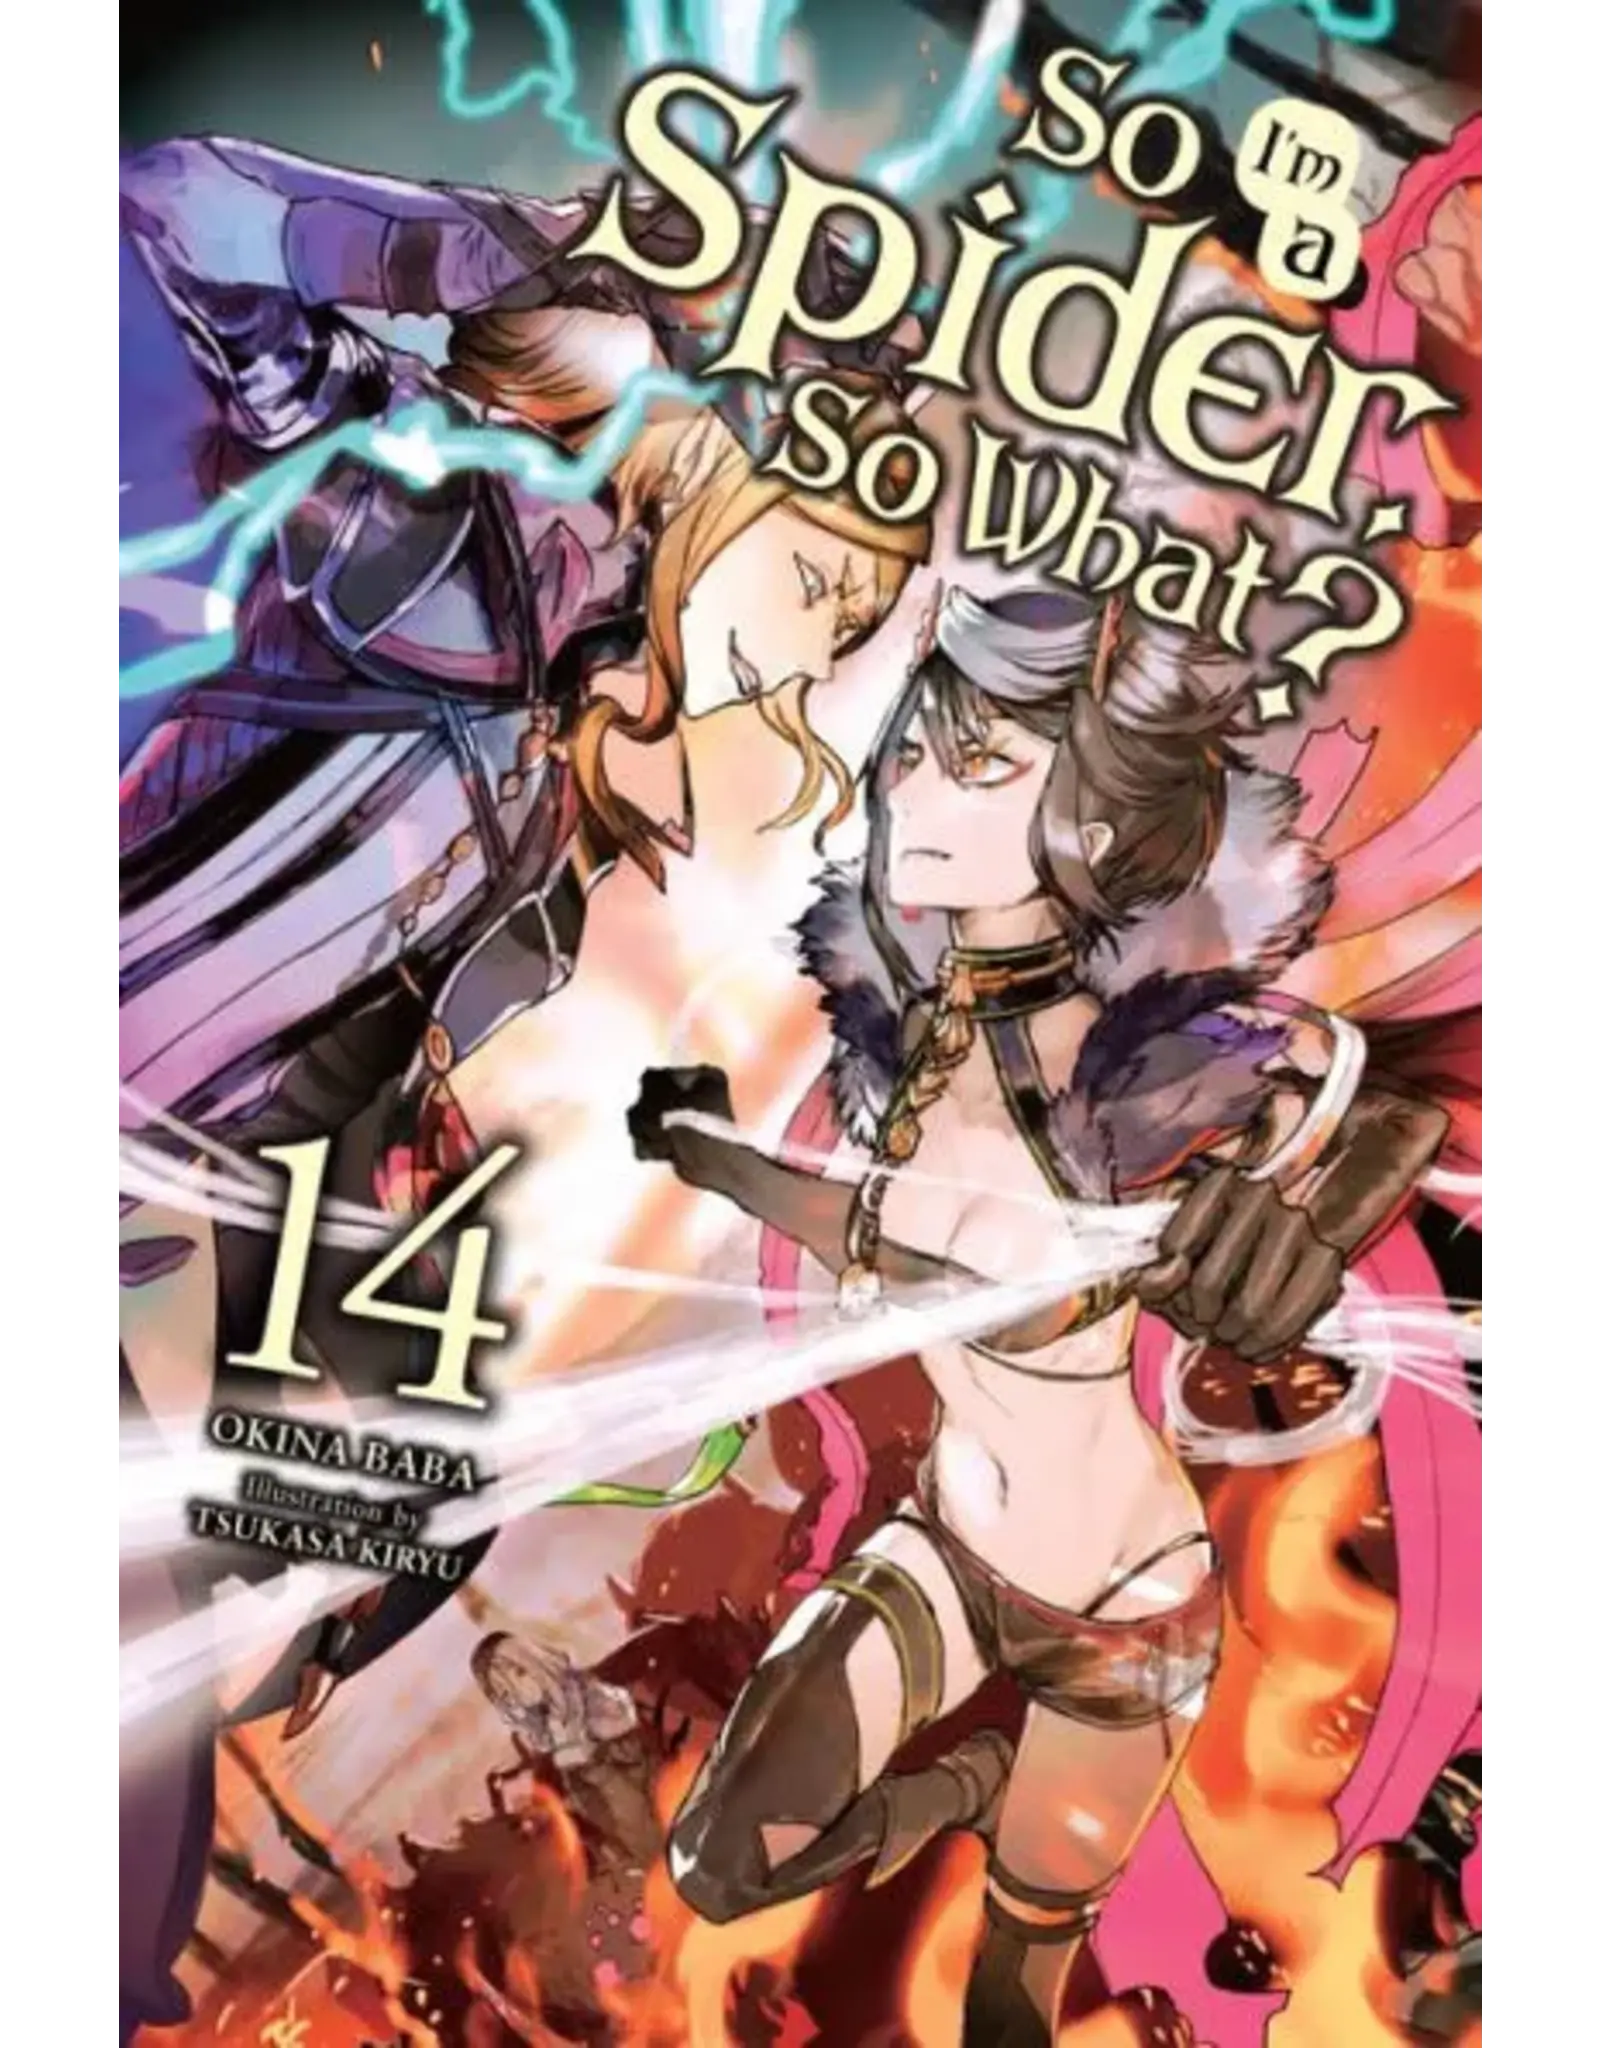 So I'm A Spider So What Vol. 14 Light Novel